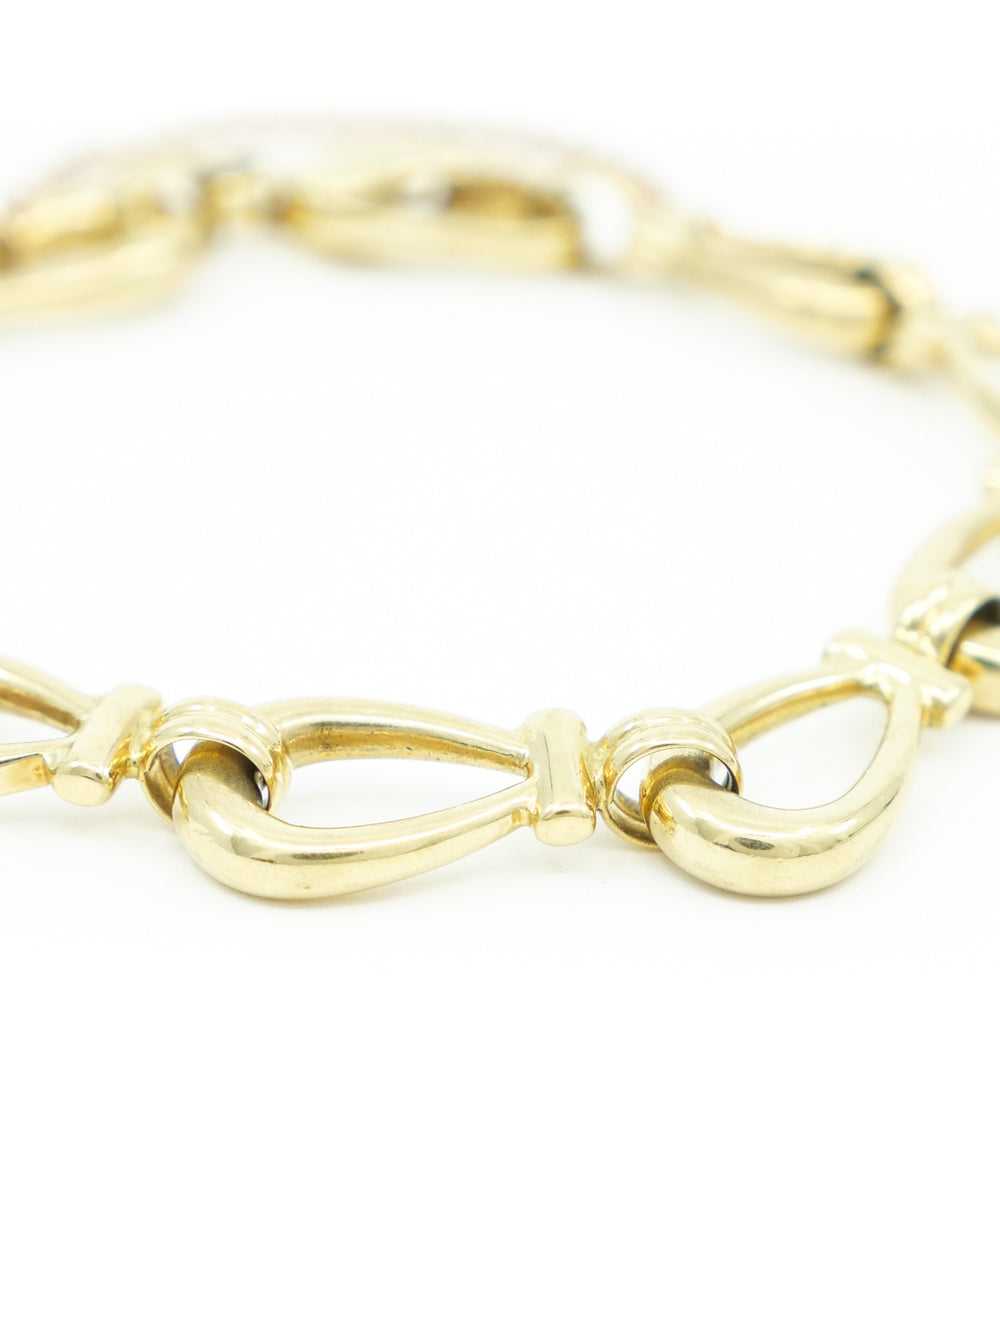 18k Horseshoe Link Chain Bracelet - image 2